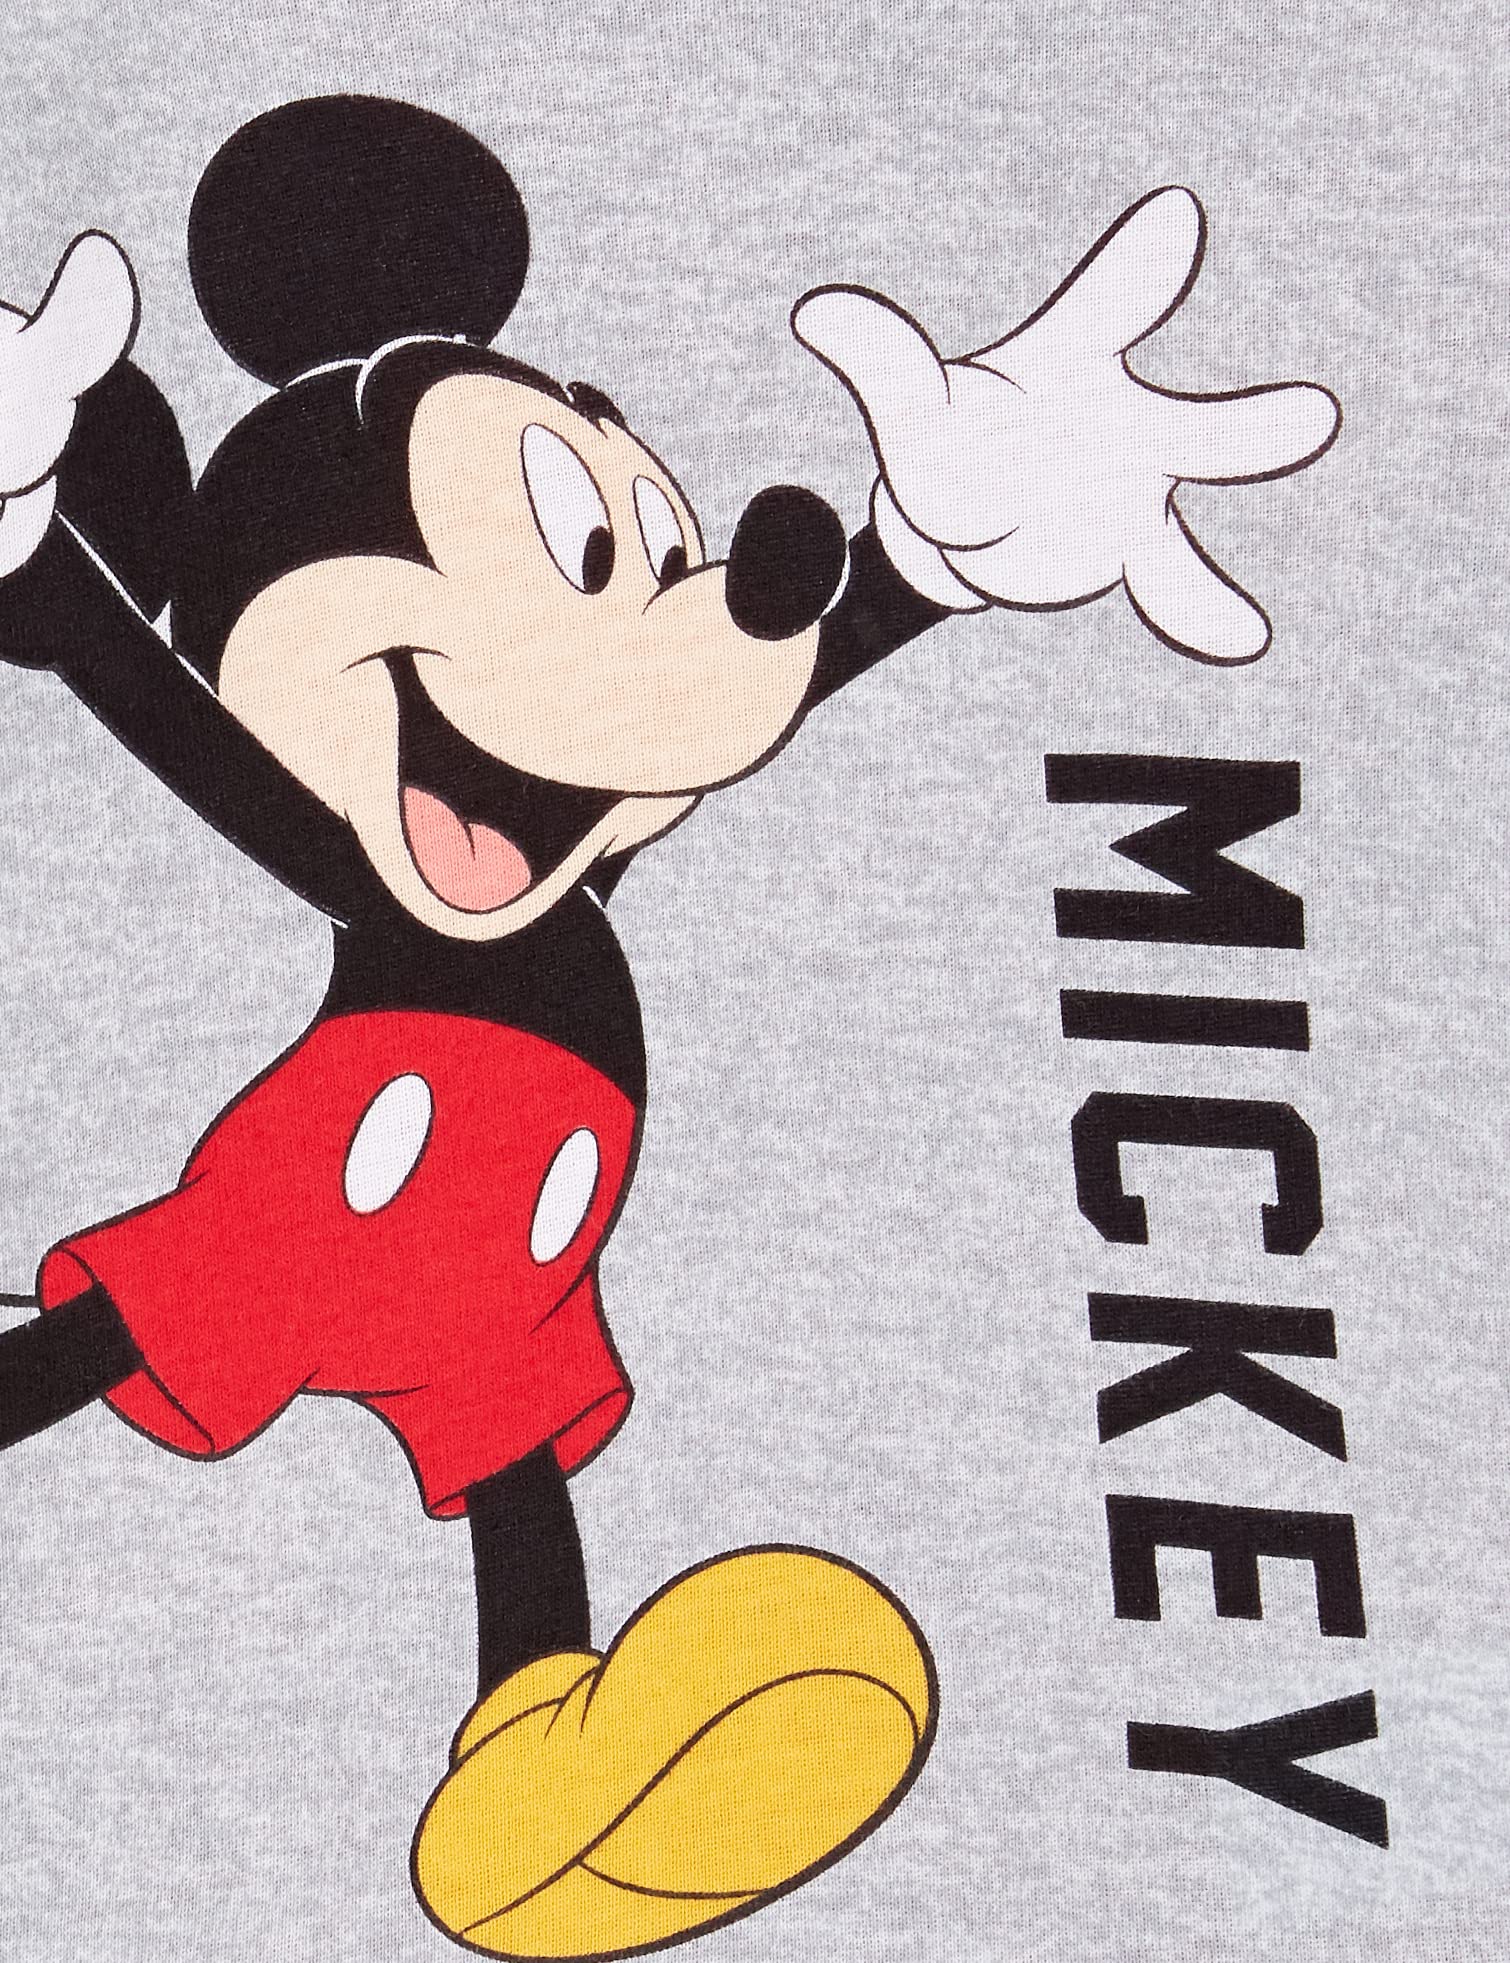 Disney Boys' Mickey Mouse 6-Piece Snug-Fit Cotton Pajamas Set